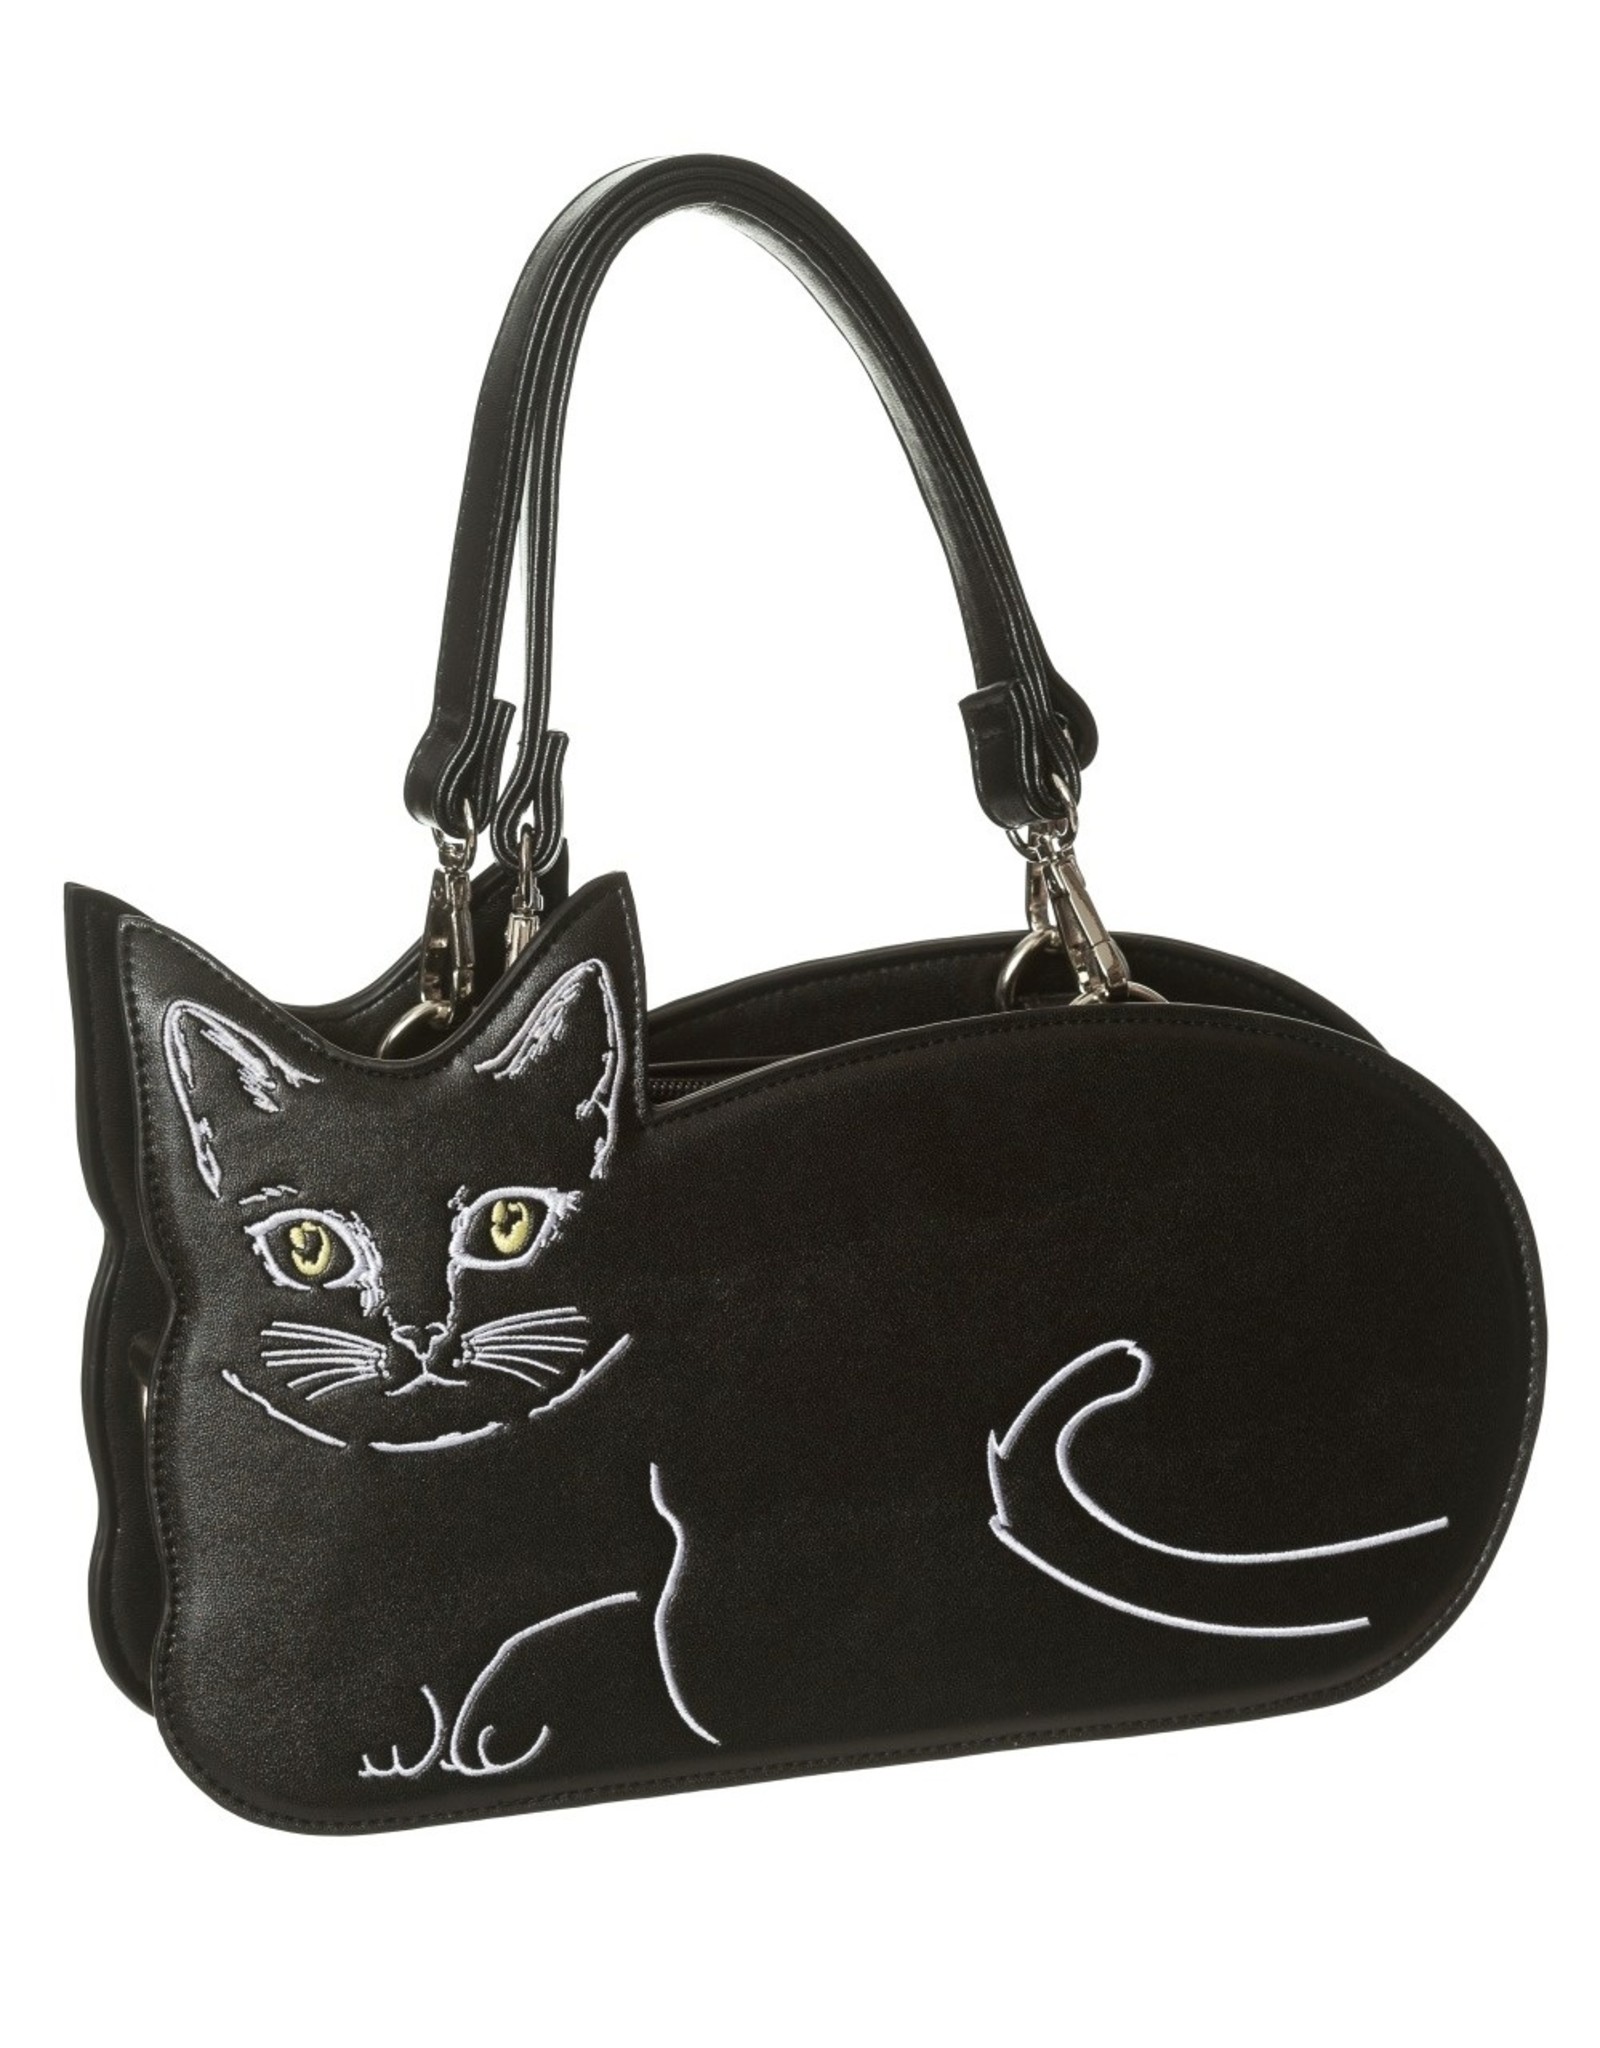 Banned Fantasy bags and wallets - Kitty Kat Handbag